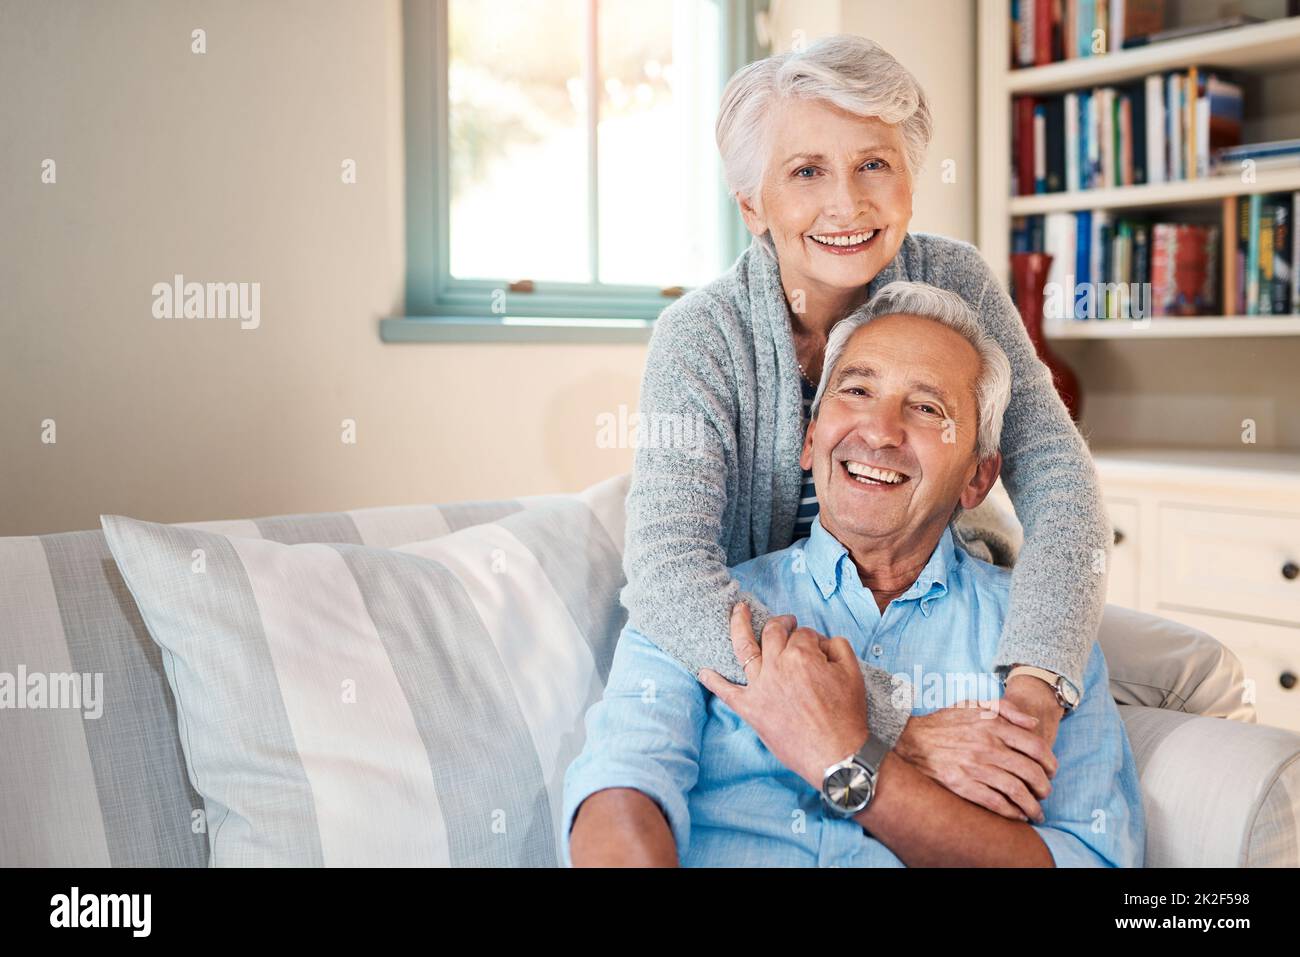 Unsere häusliche Glückseligkeit verwandelte sich in goldene Glückseligkeit. Aufnahme eines älteren Ehepaares, das zu Hause eine gute Zeit verbringt. Stockfoto